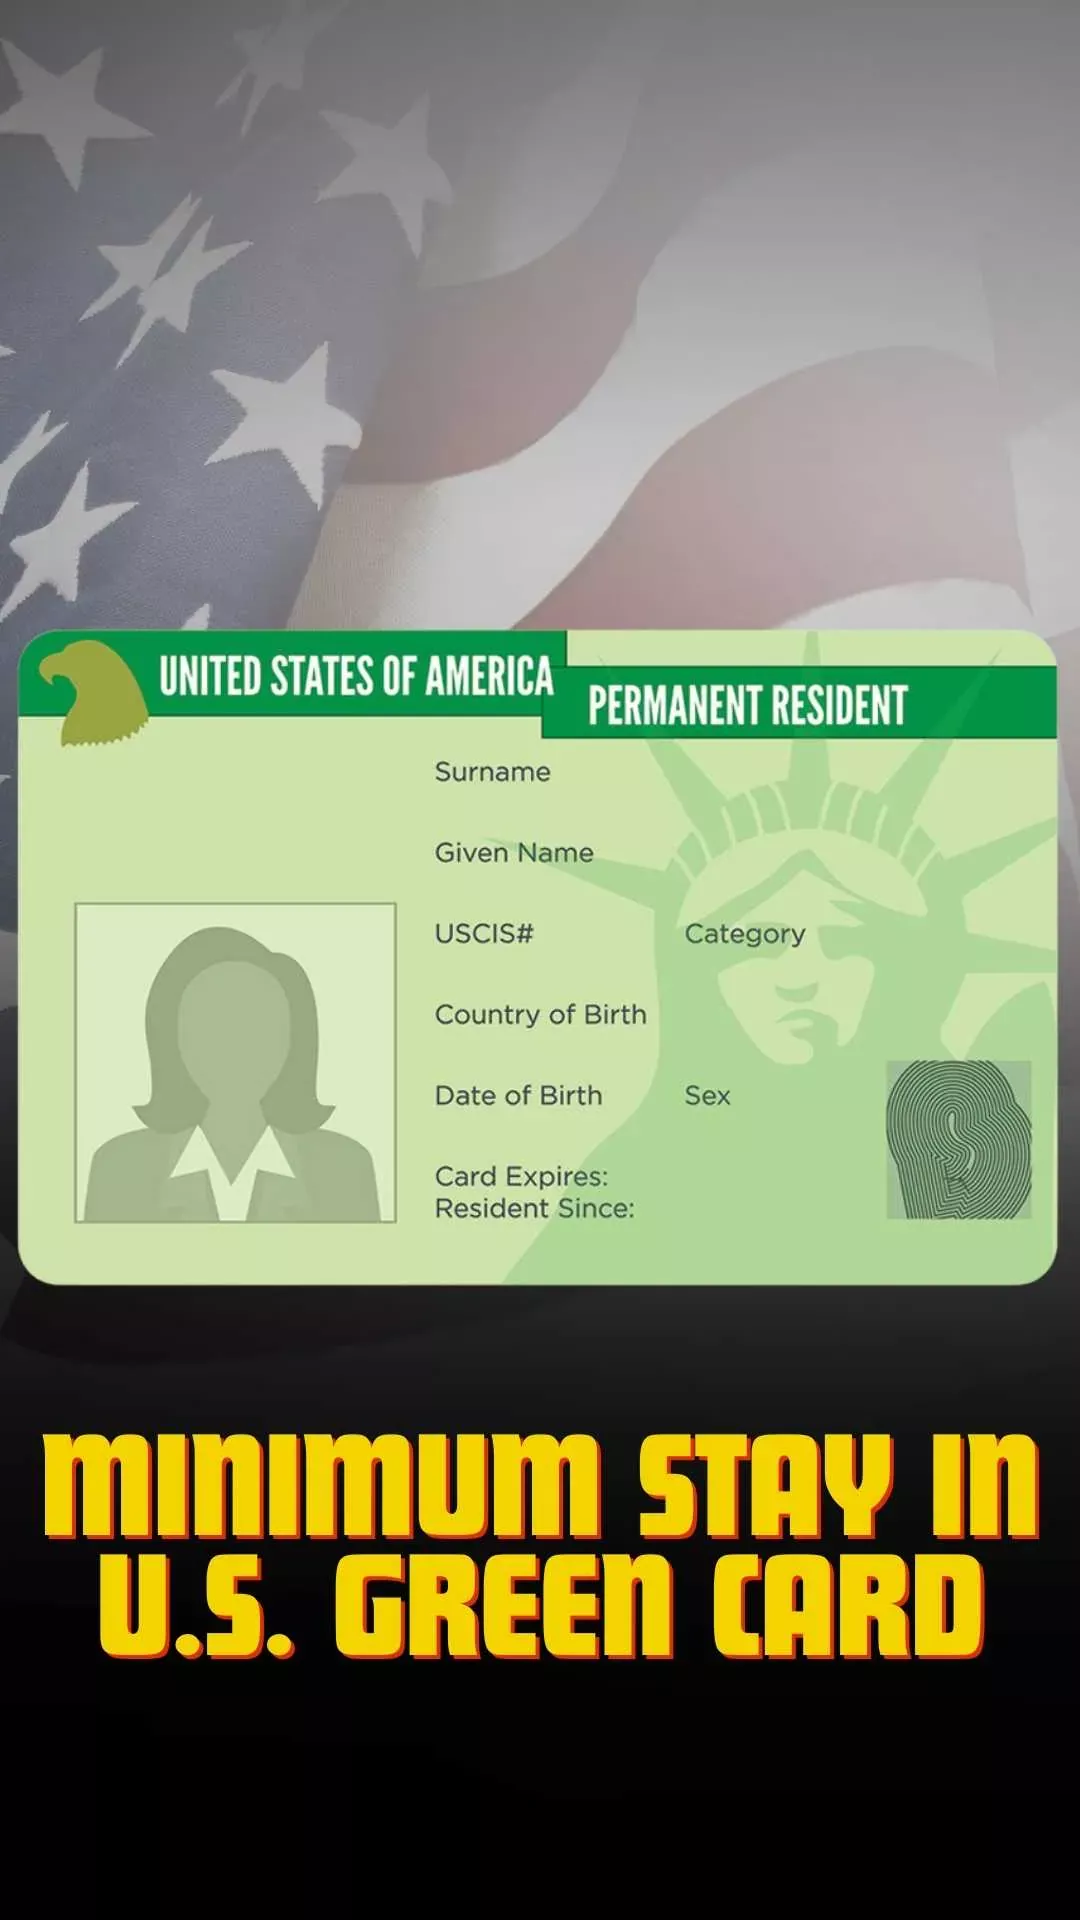 Minimum Stay In U.S. Green Card